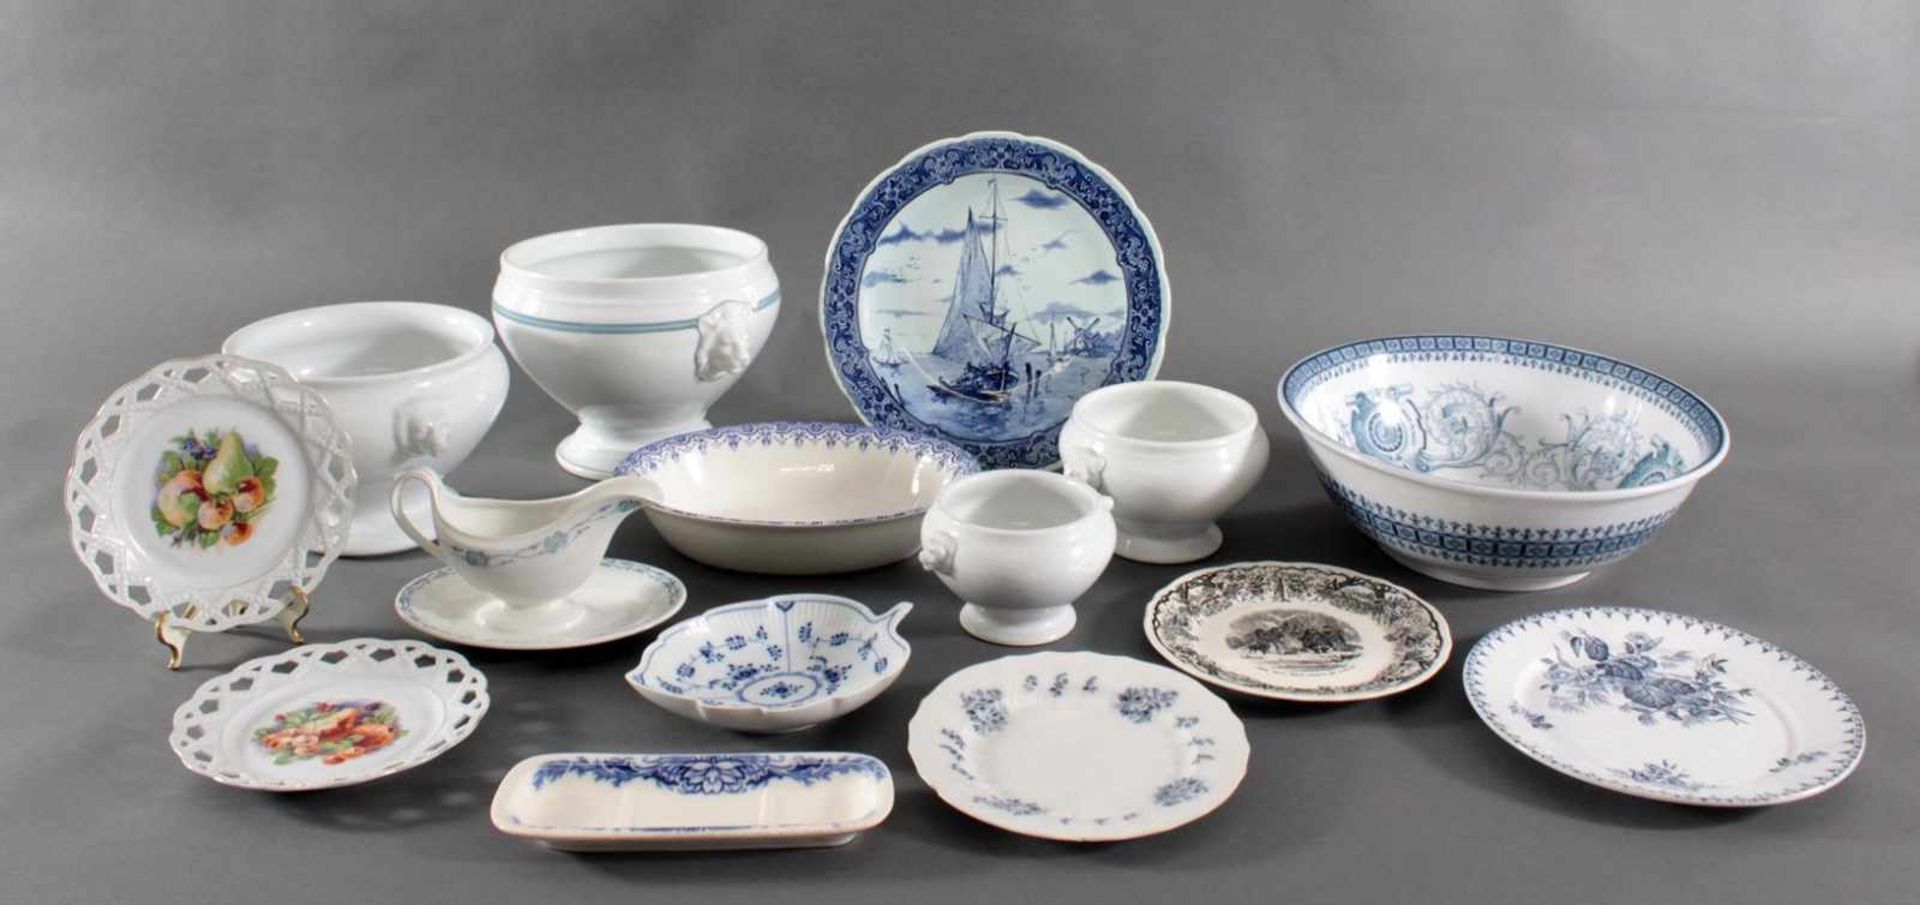 Konvolut Porzellan und Keramik um 19004 Suppenschüsseln mit seitlichen Handhaben in Form von